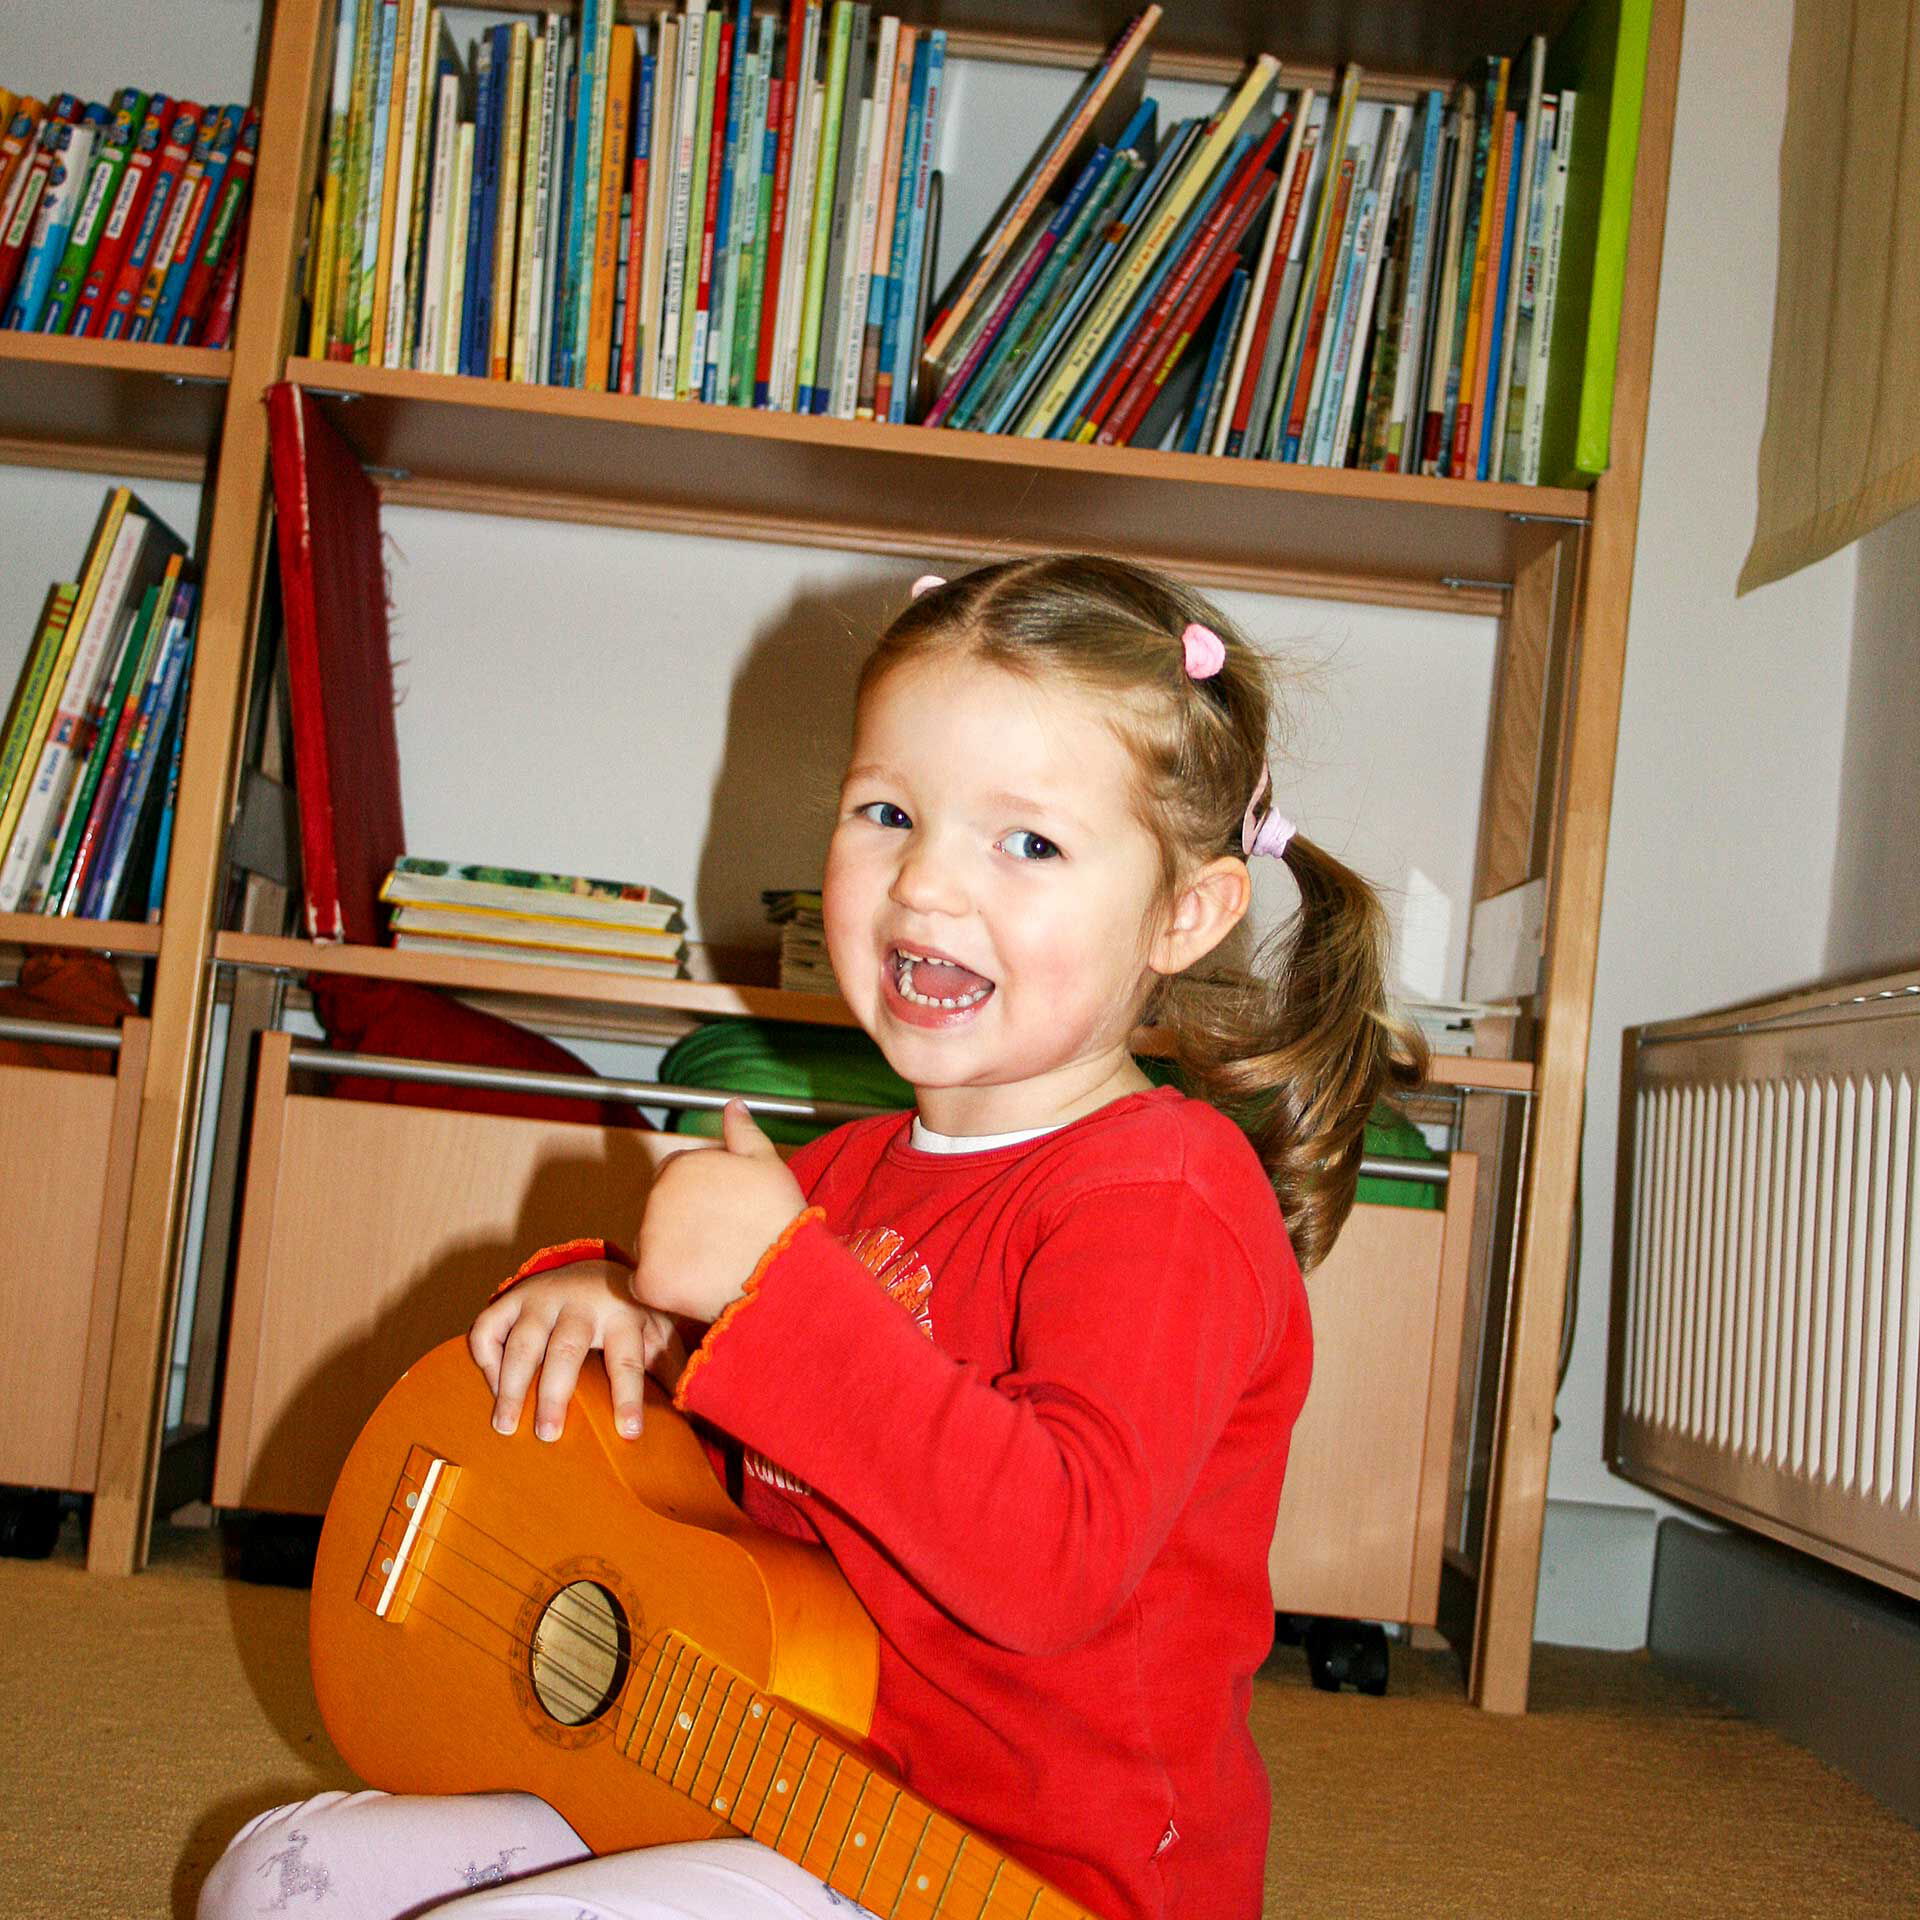 Ein Mädchen sitzt auf dem Boden und spielt mit einer kleinen Holzgitarre. Im Hintergrund steht ein Regal mit Büchern.